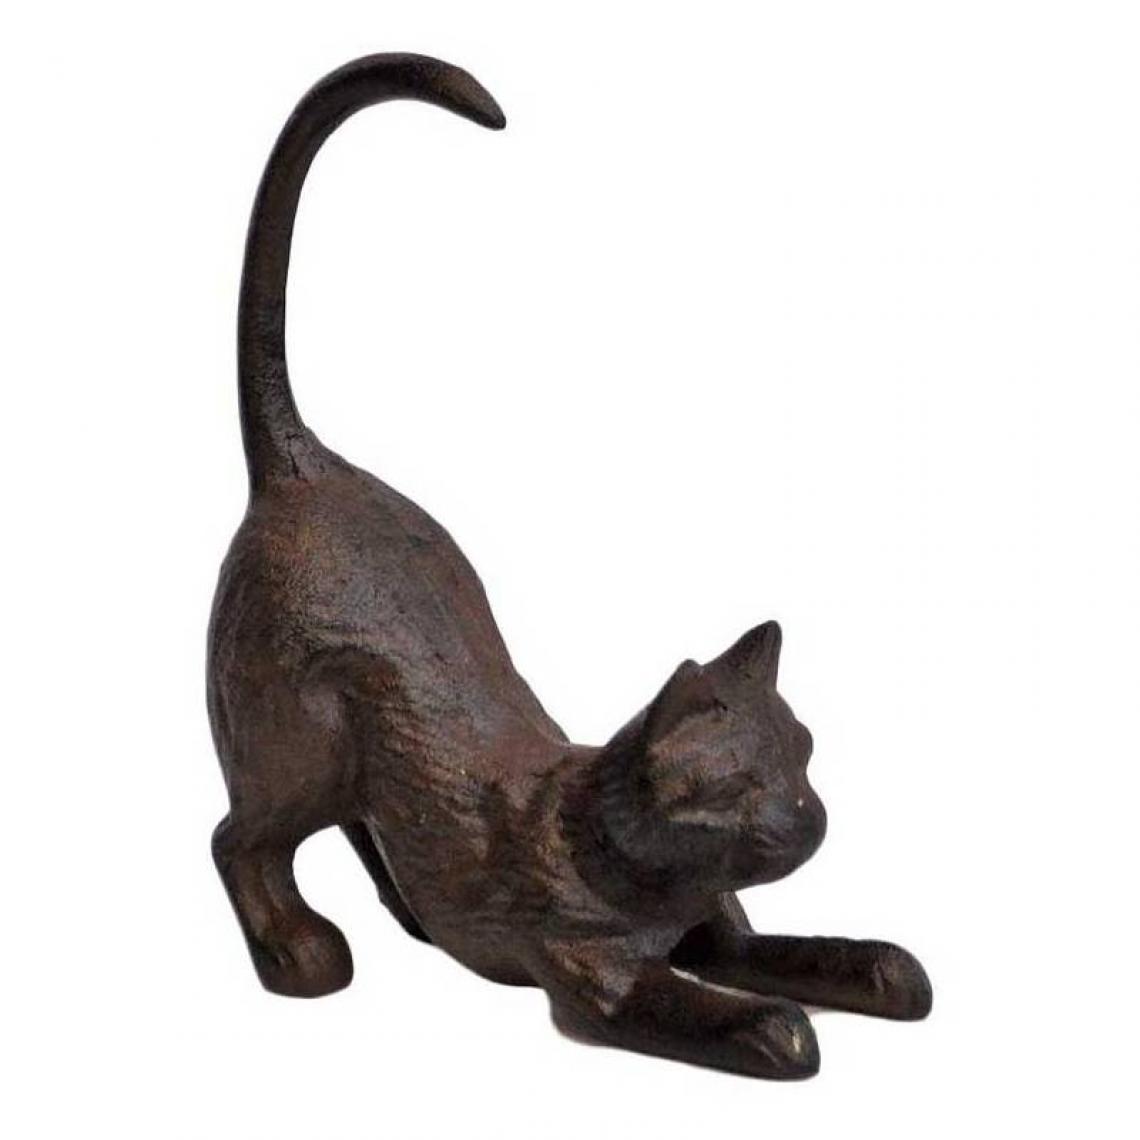 L'Héritier Du Temps - Statuette Chat ou Animal Félin Décoratif à Poser en Fonte Patinée Marron 6x14x18cm - Petite déco d'exterieur